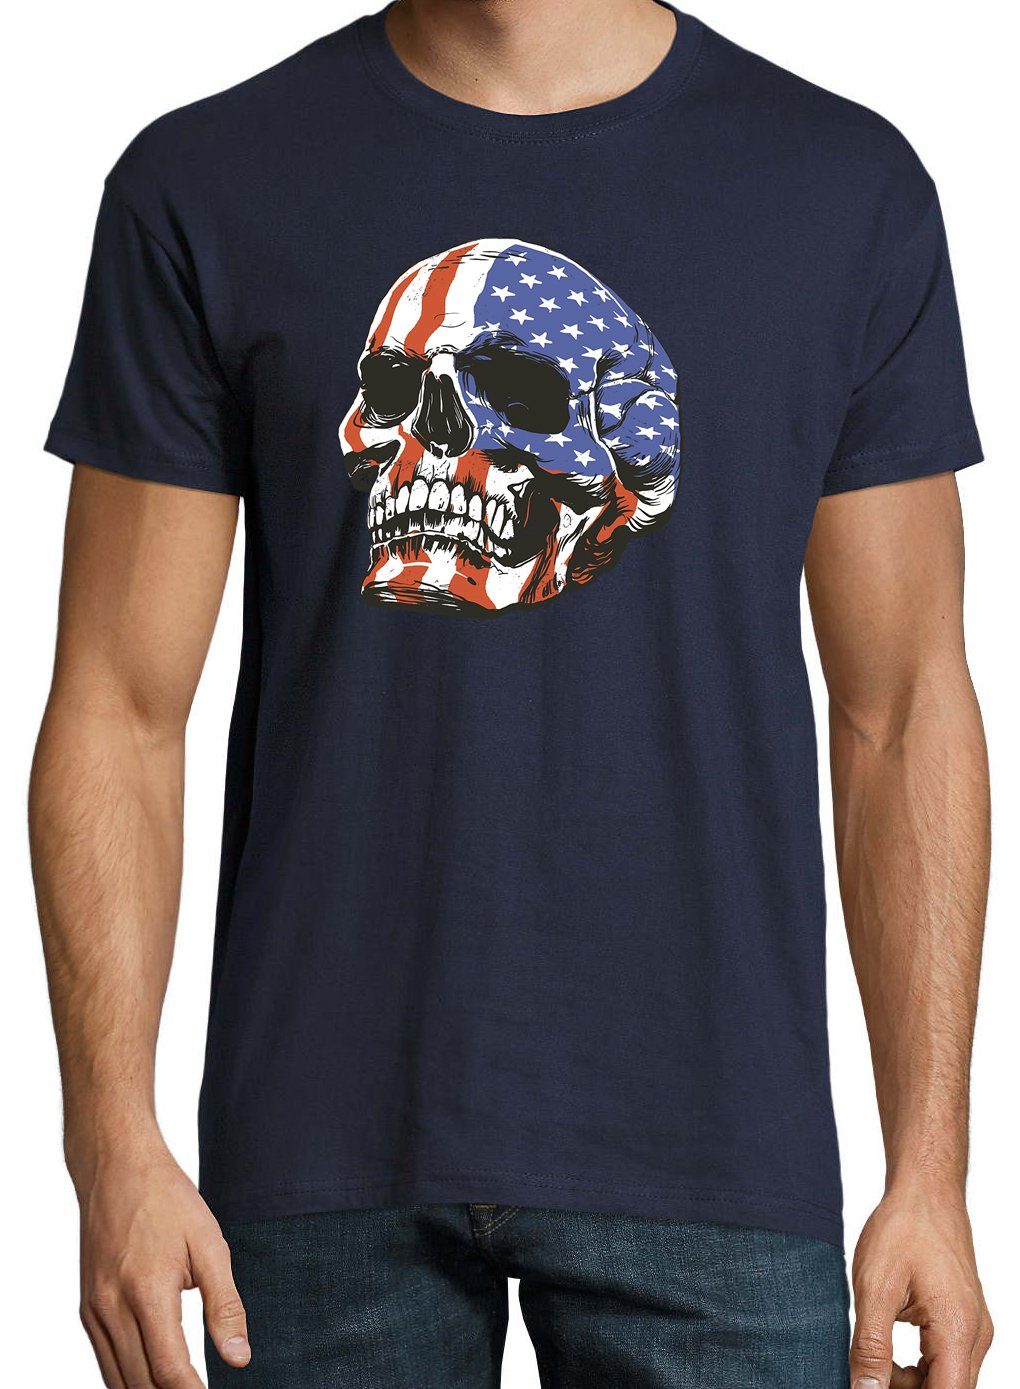 mit Shirt USA T-Shirt Skull Youth trendigem Designz Frontprint Herren Schädel Navyblau